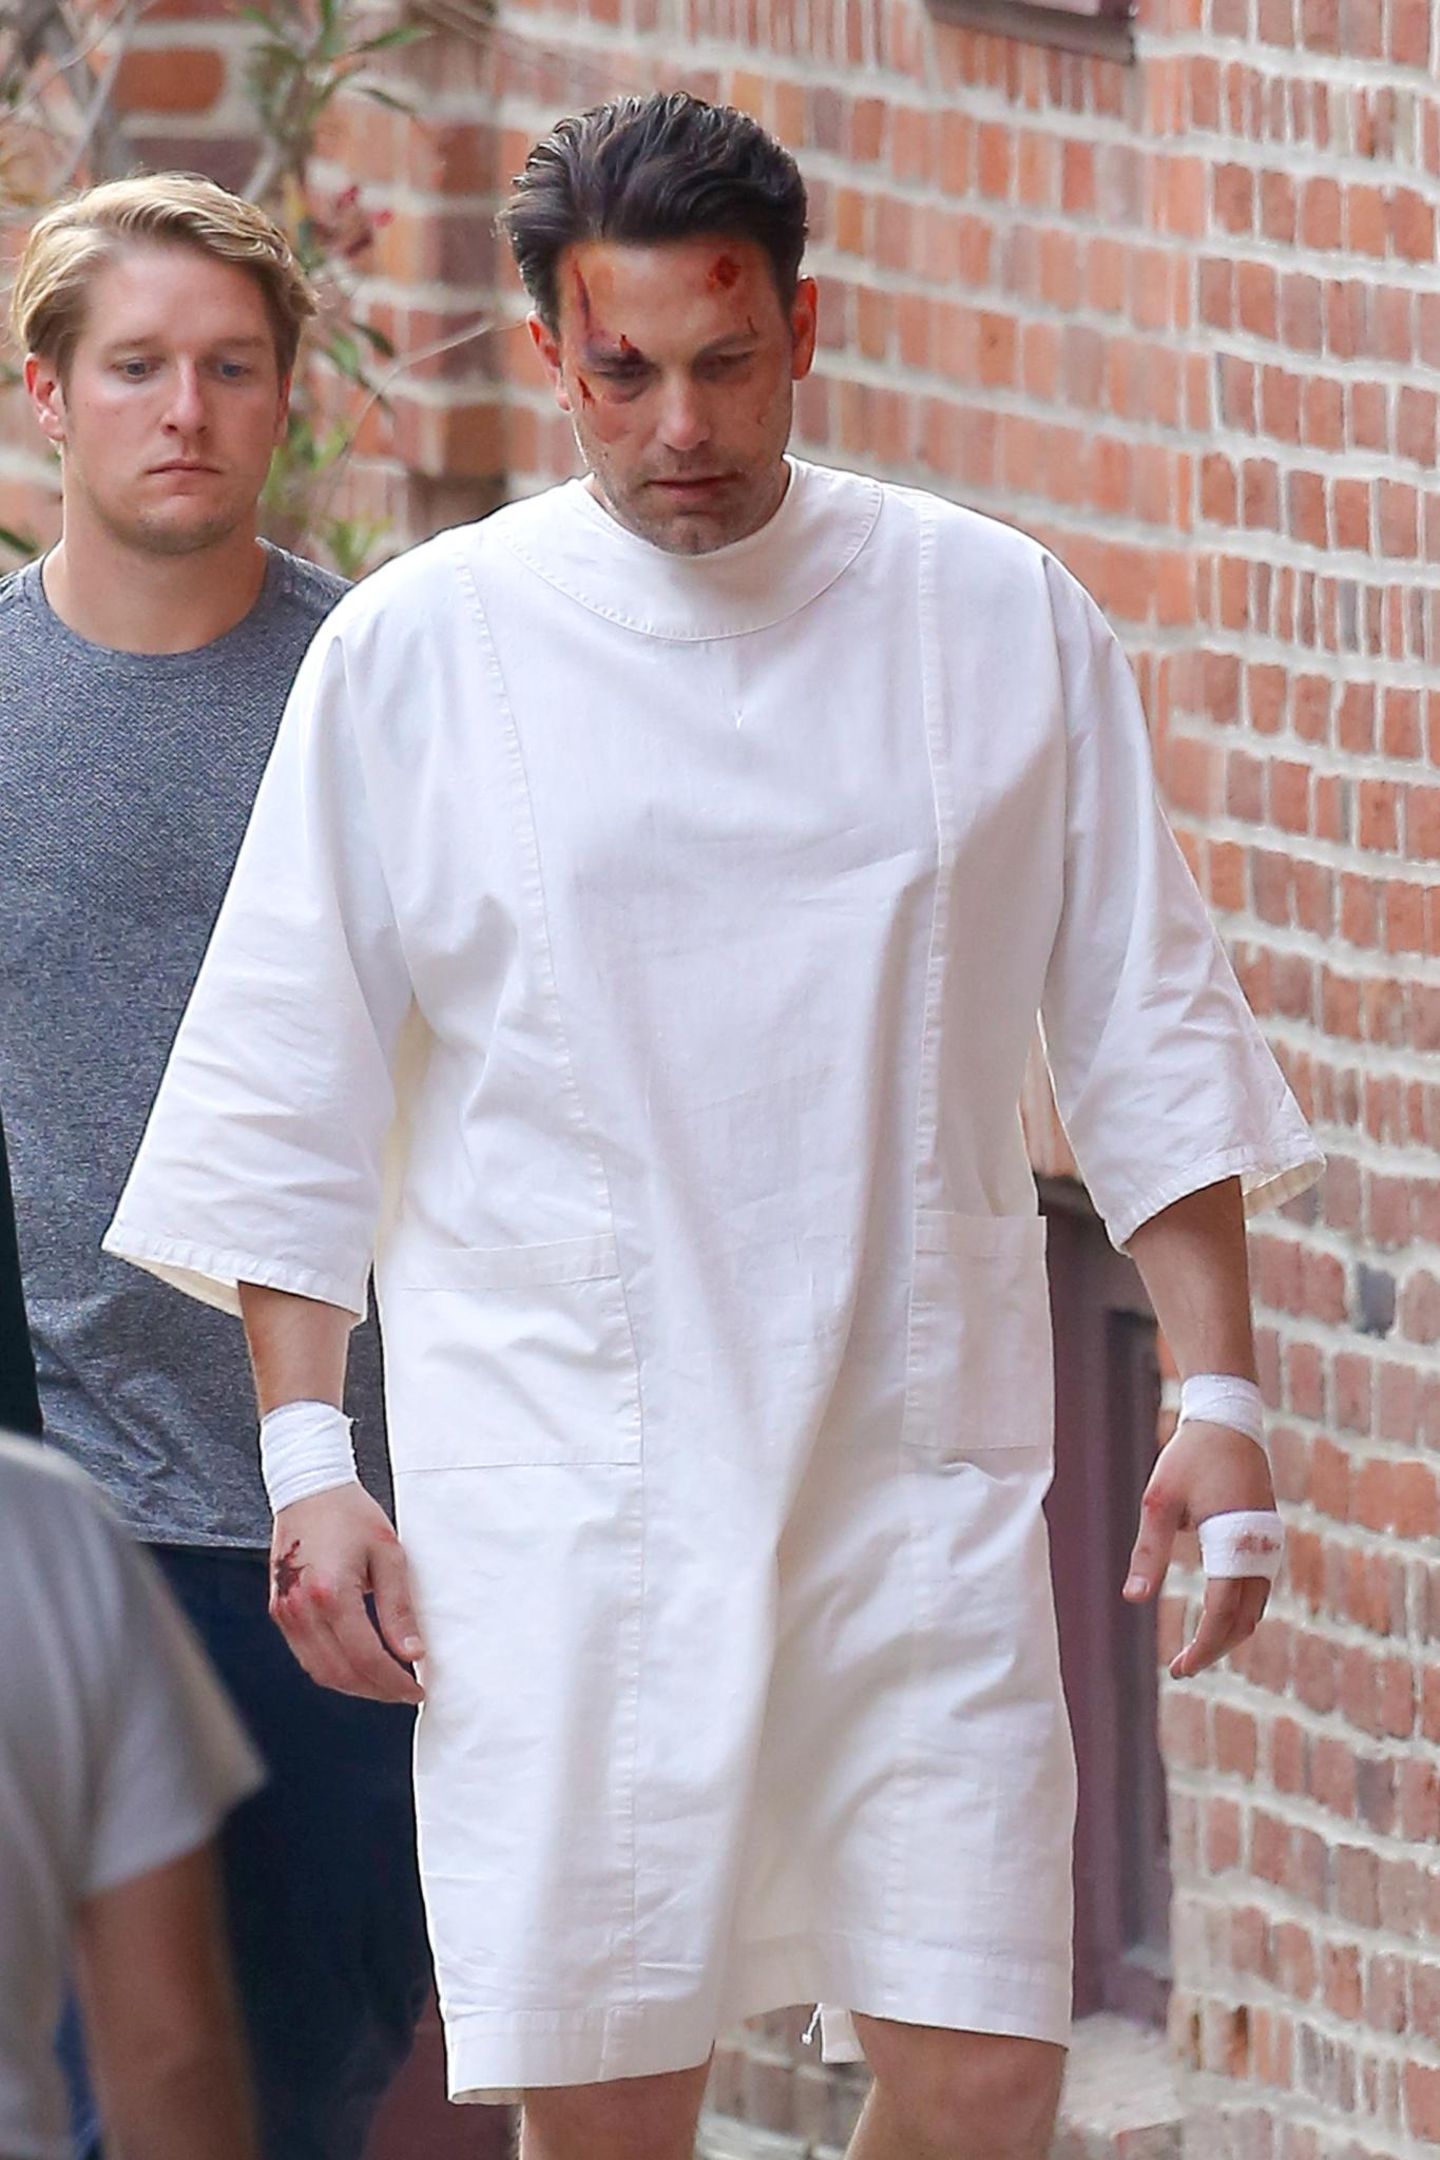 8. Dezember 2015: Nach einer anstrengenden Psychiatrie-Szene für den Film "Live by Night" braucht der blutverschmierte Ben Affleck erstmal eine Pause.